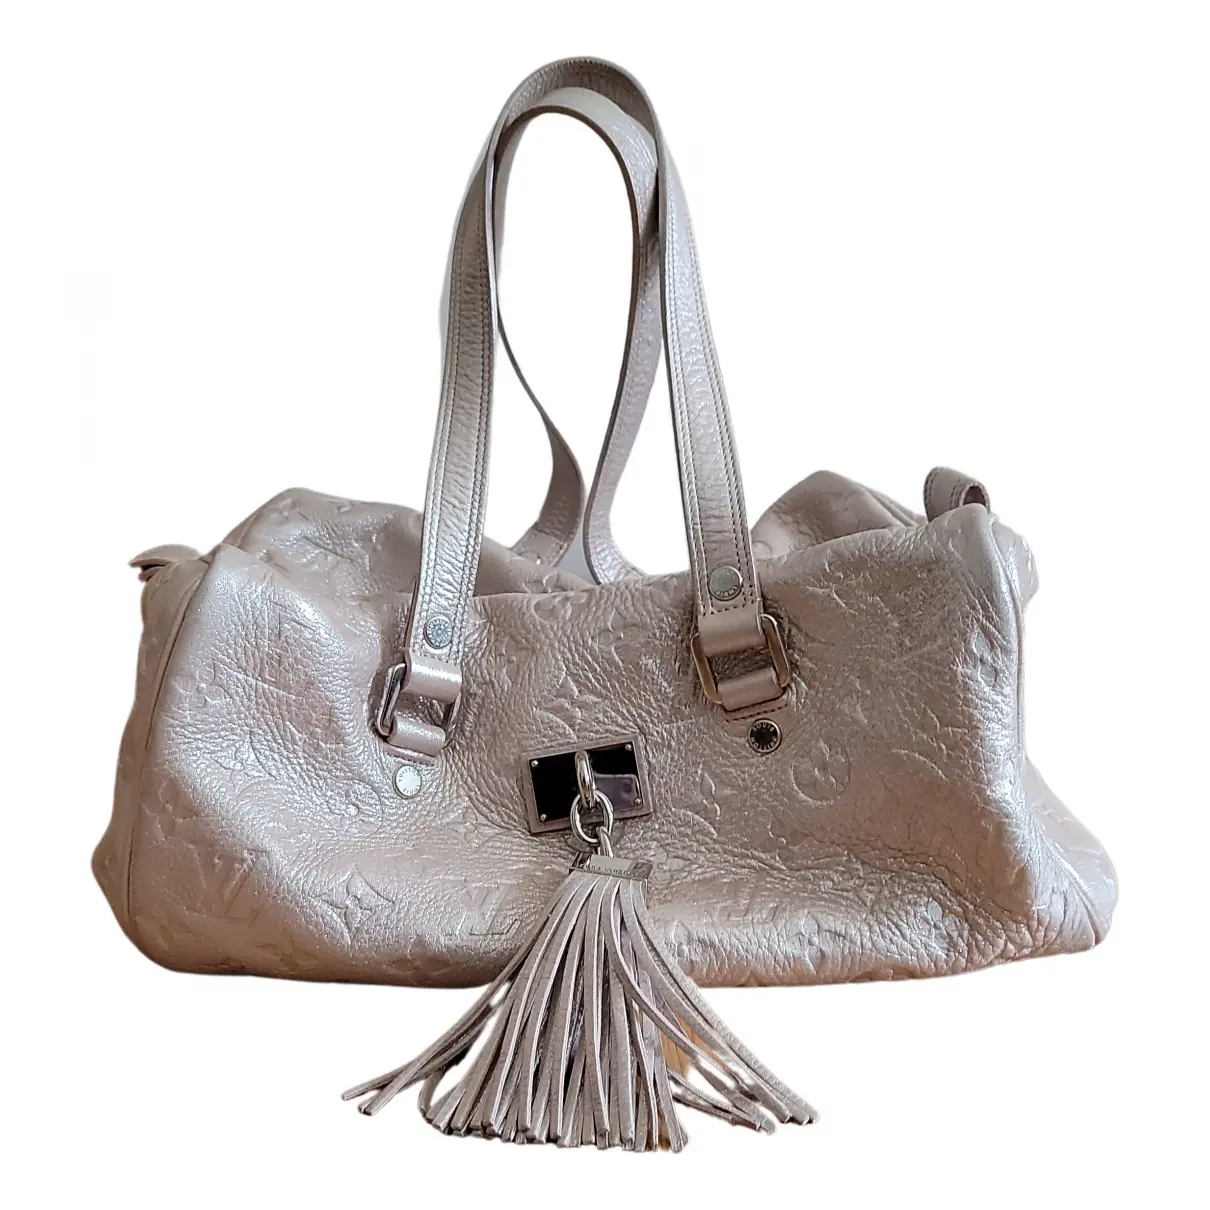 Comète leather handbag Louis Vuitton